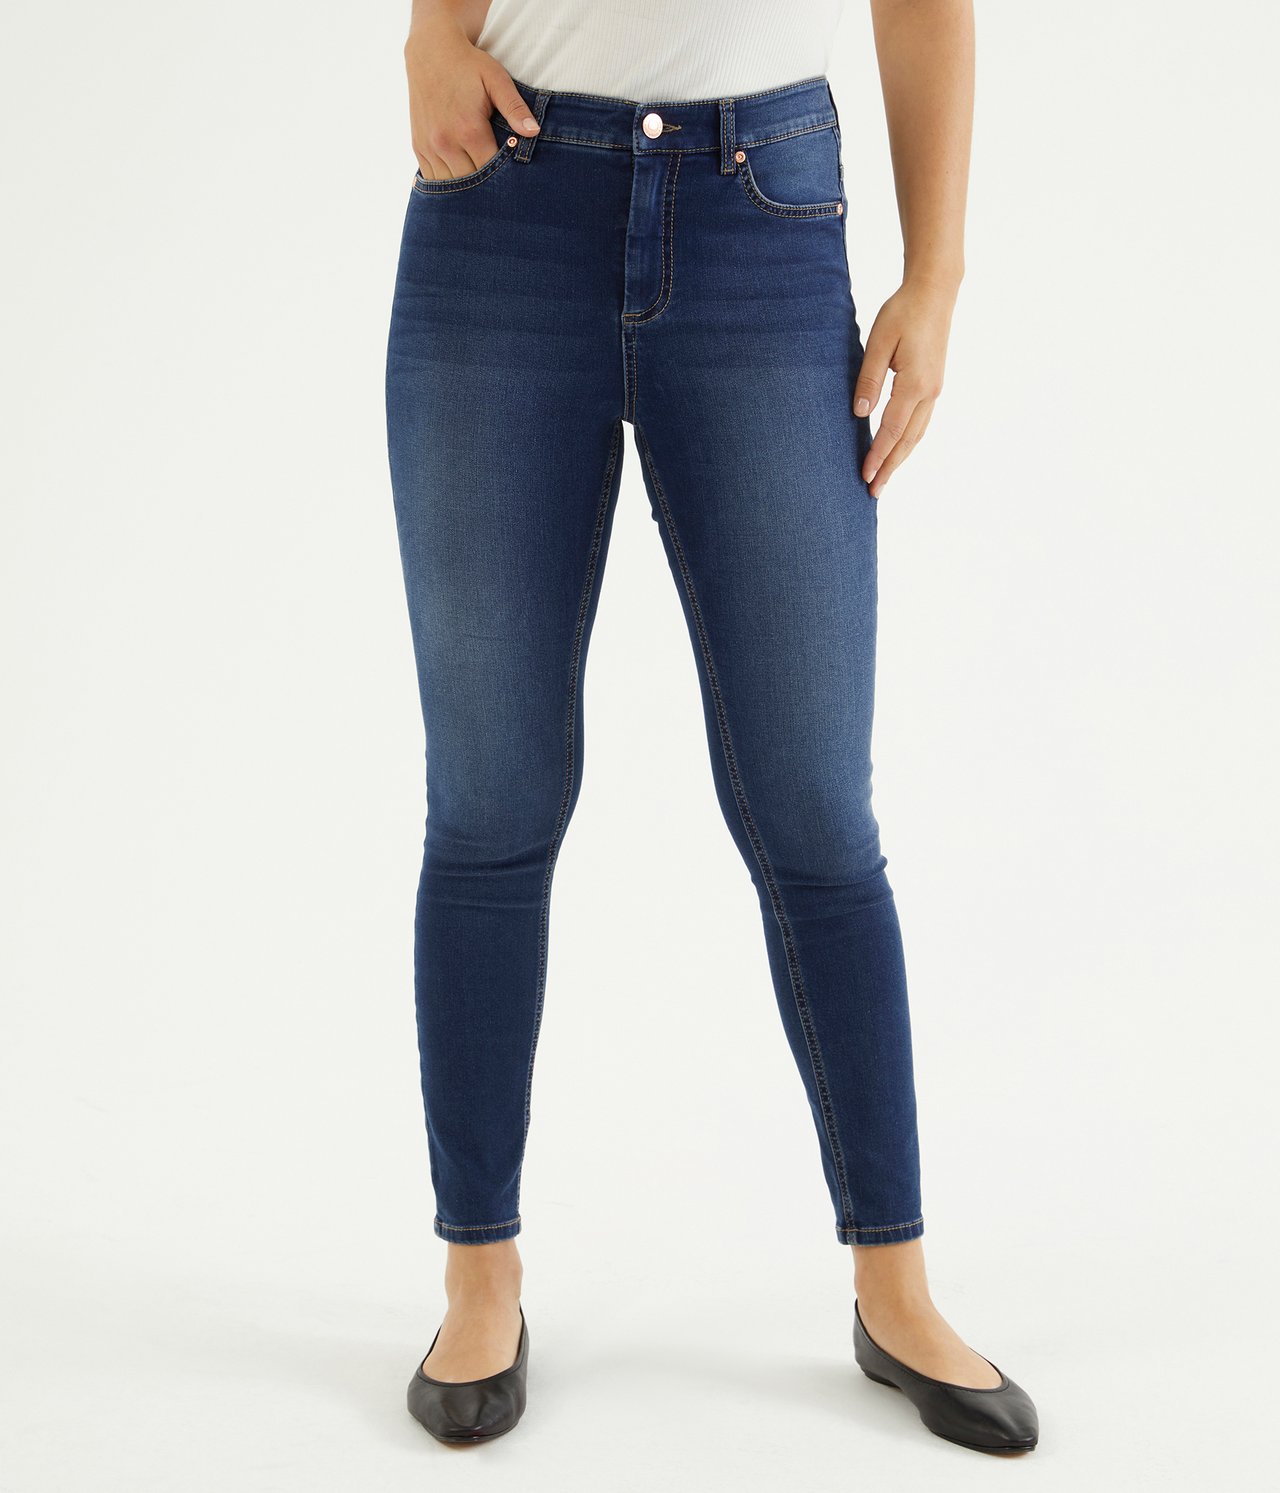 Super slim jeans short leg - Tumma denimi - 3